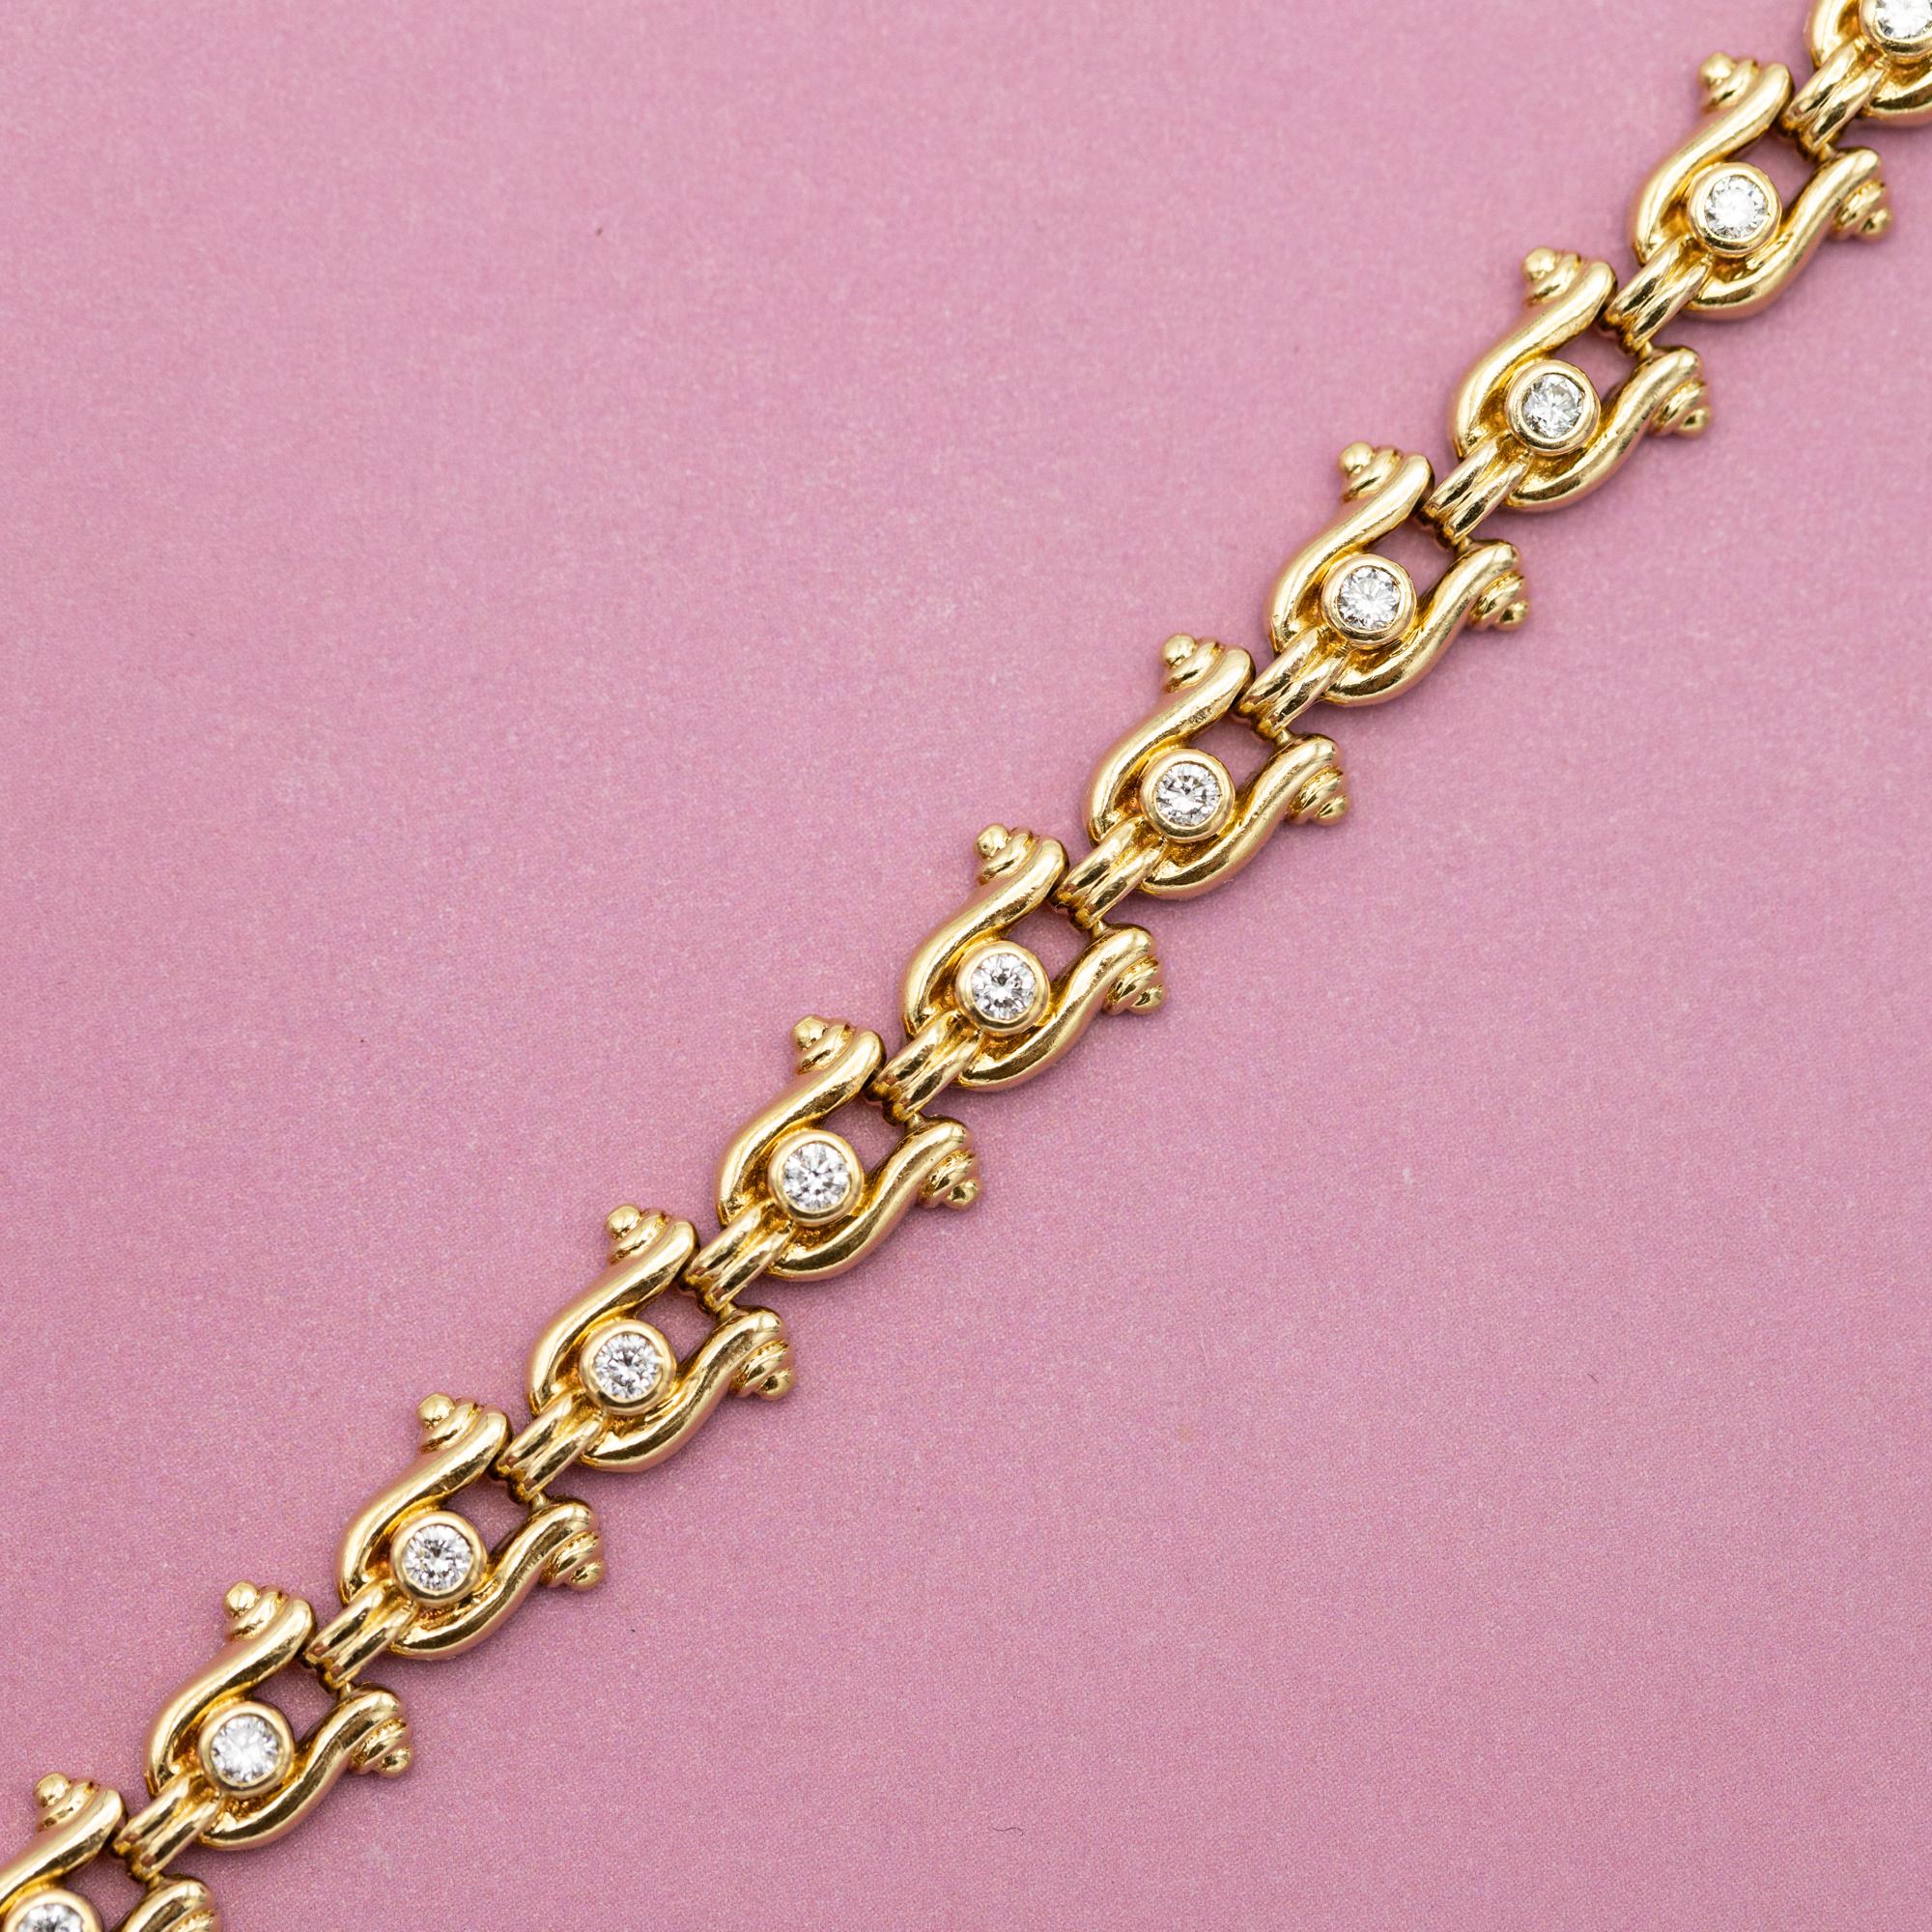 Brilliant Cut Vintage yellow gold Tennis bracelet - Horse shoe - 12.5 gr - 0.62 ct diamonds For Sale